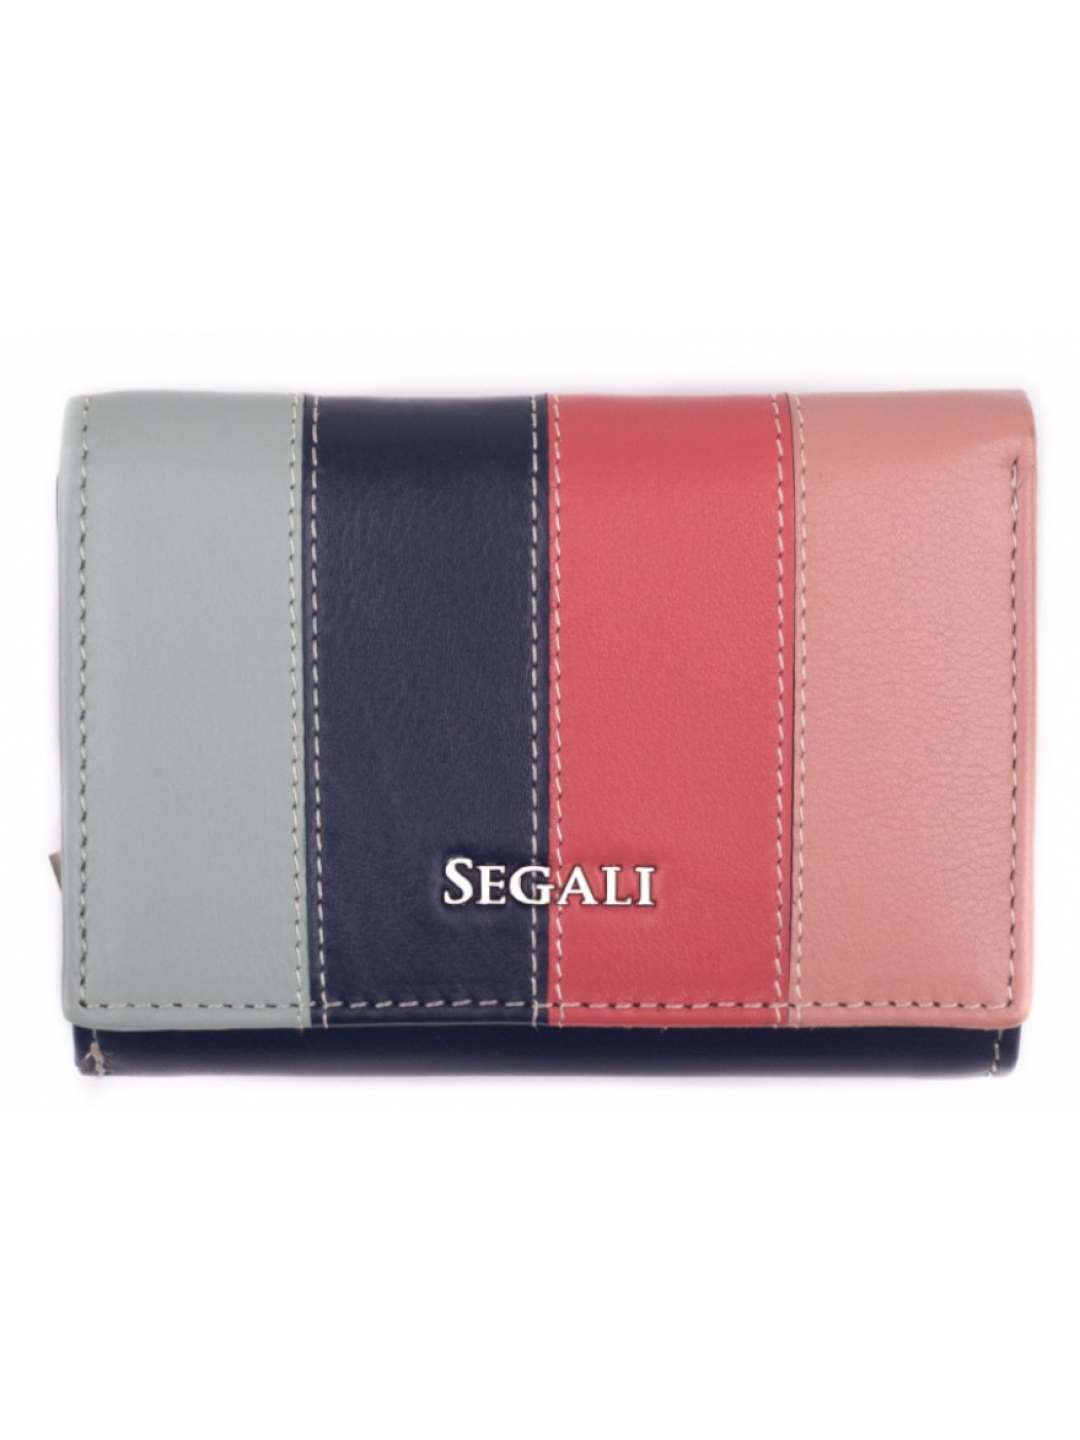 SEGALI Dámská kožená peněženka 7406 multi